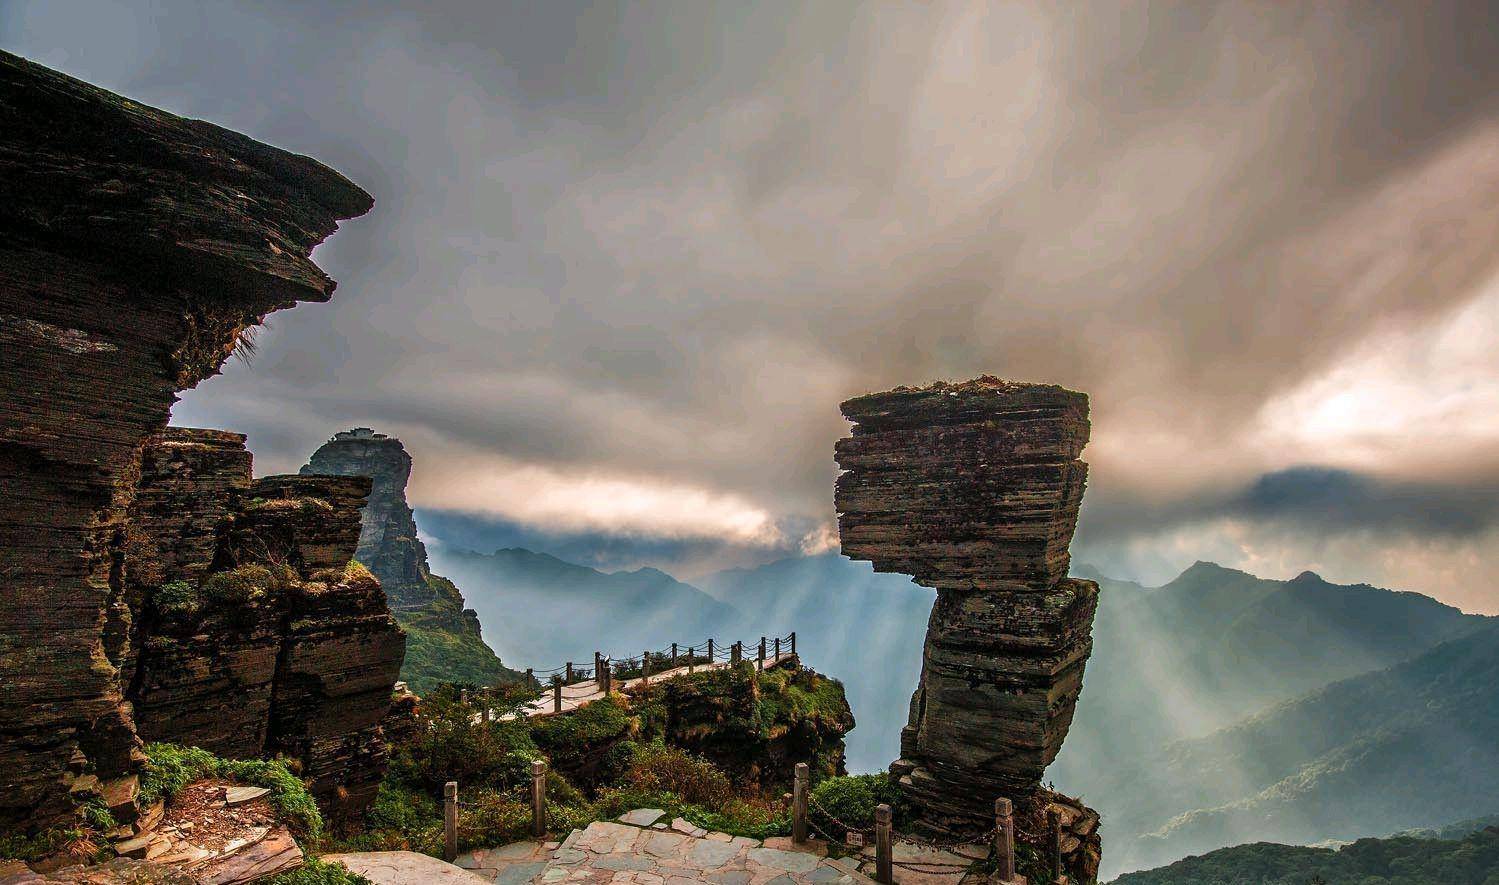 英国游客拍到贵州梵净山照片,引发热议:简直是大自然的馈赠